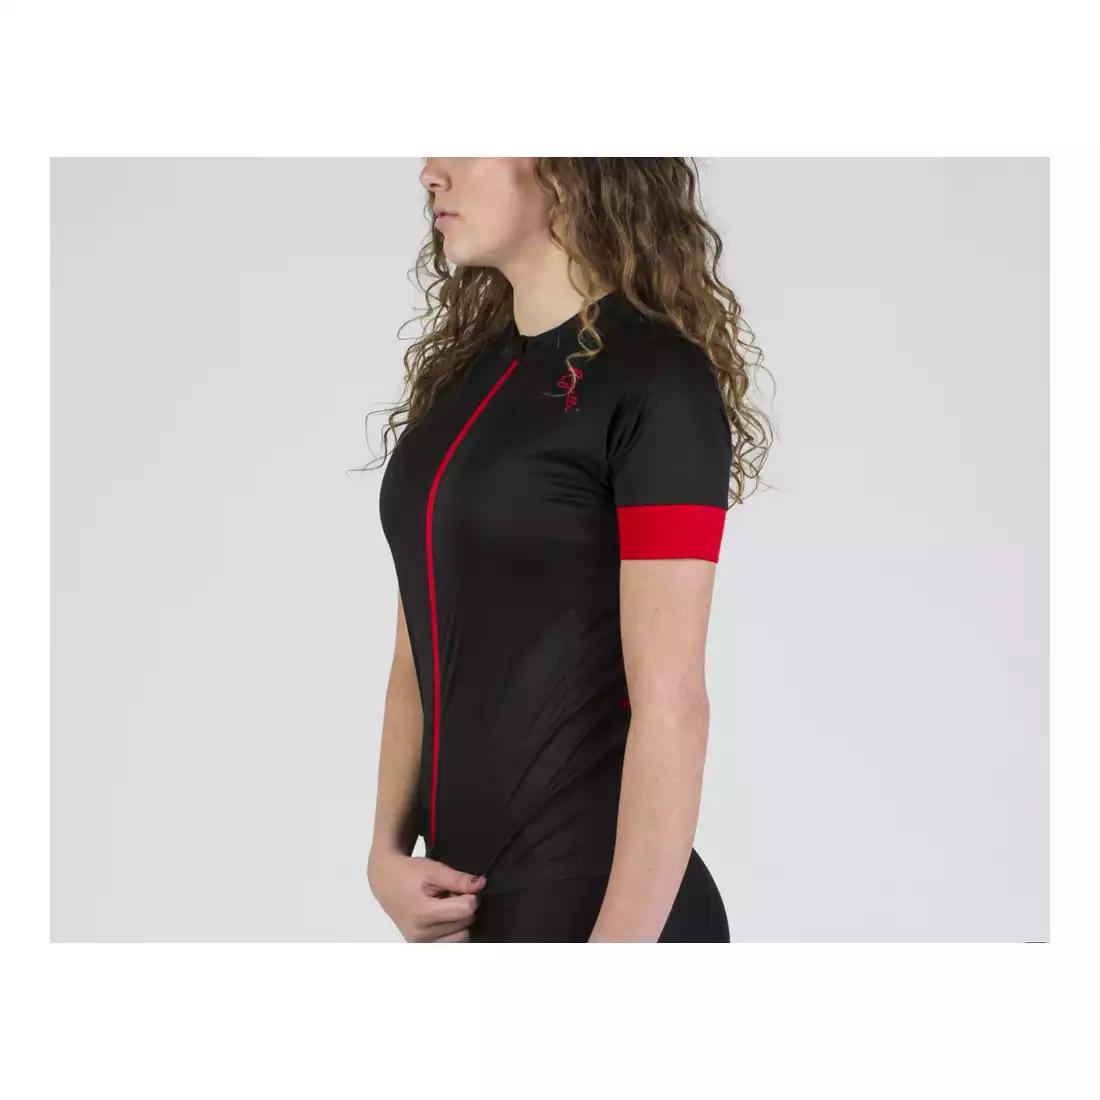 ROGELLI MODESTA damska koszulka rowerowa, czarno-czerwona